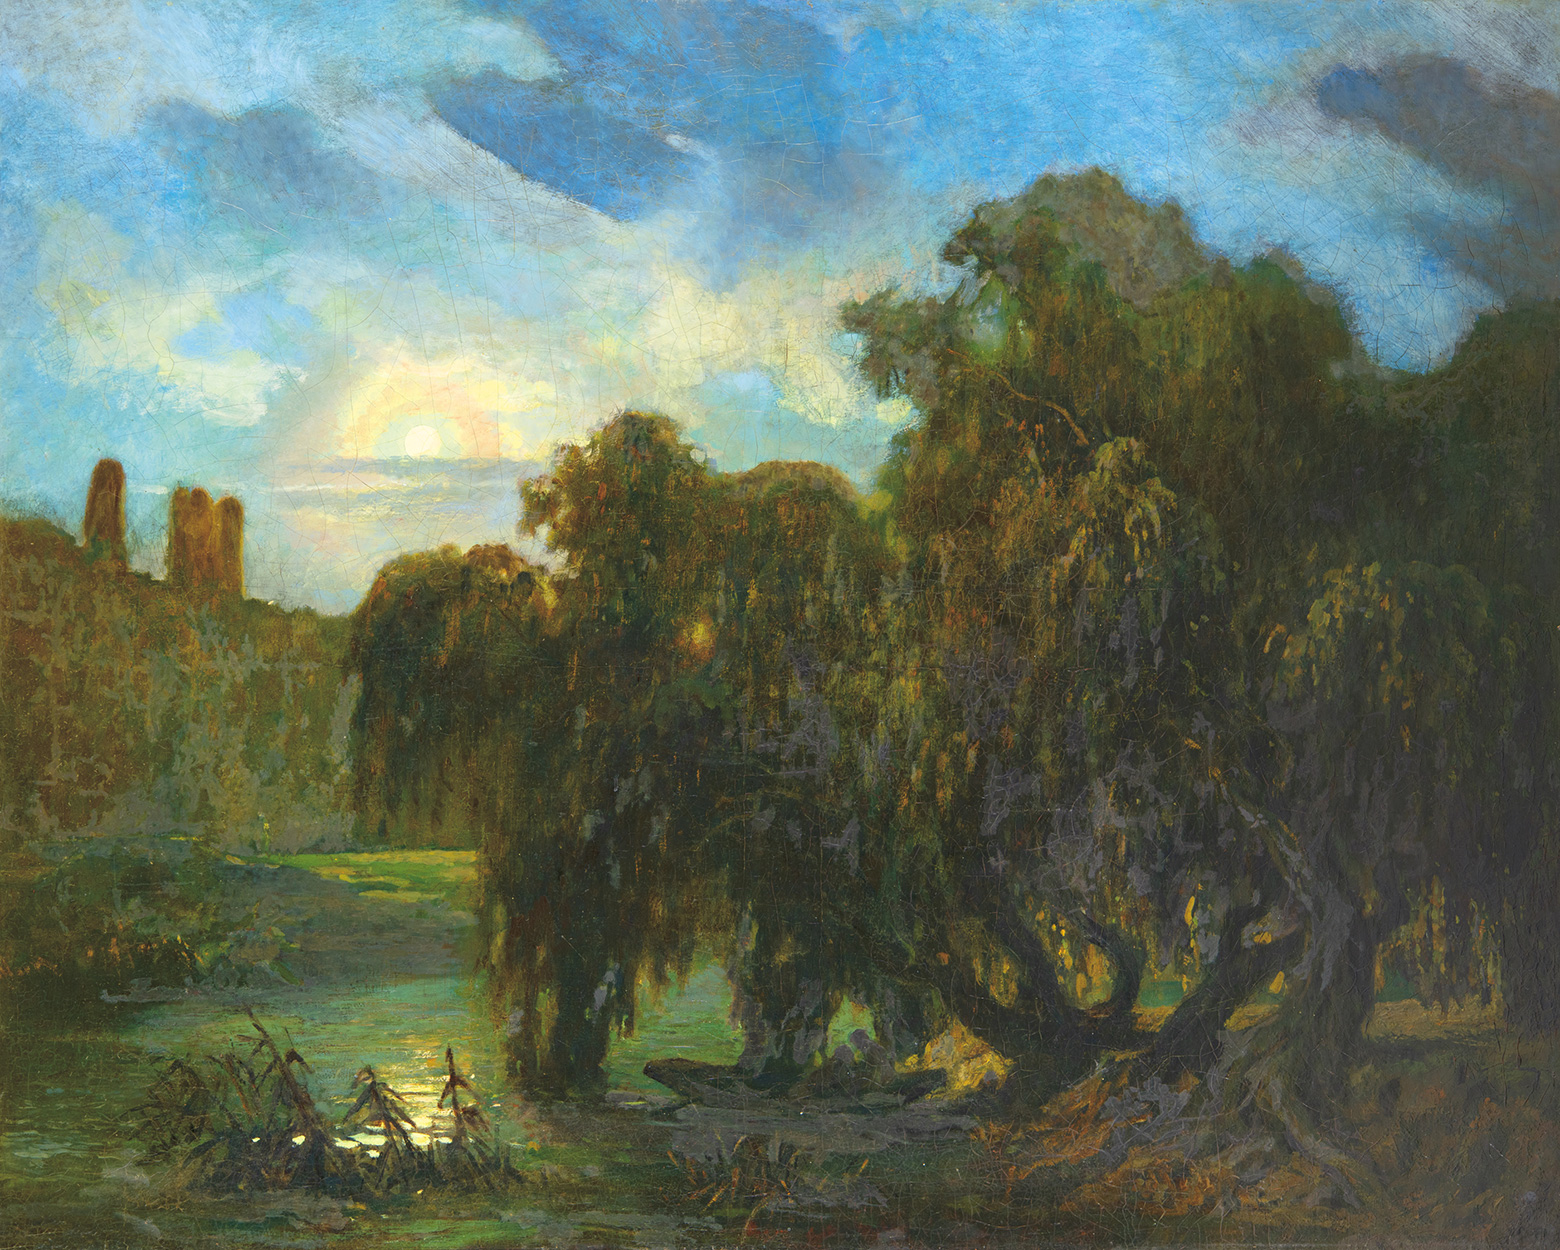 Székely Bertalan (1835-1910) Twilight landscape, 1850s